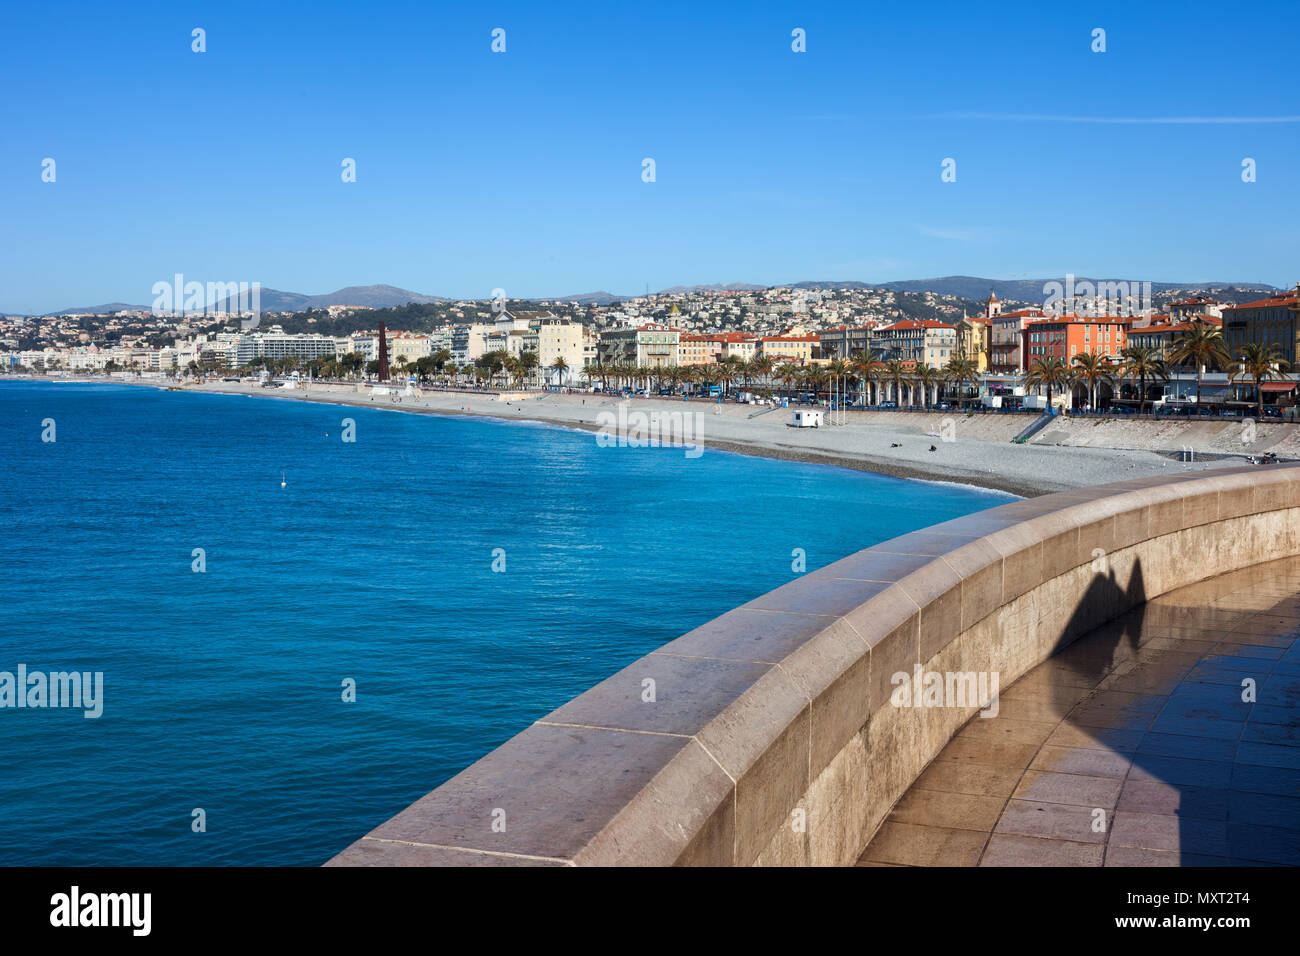 Francia - Cote d'Azur, bella città sulla costa Azzurra al Mare Mediterraneo Foto Stock